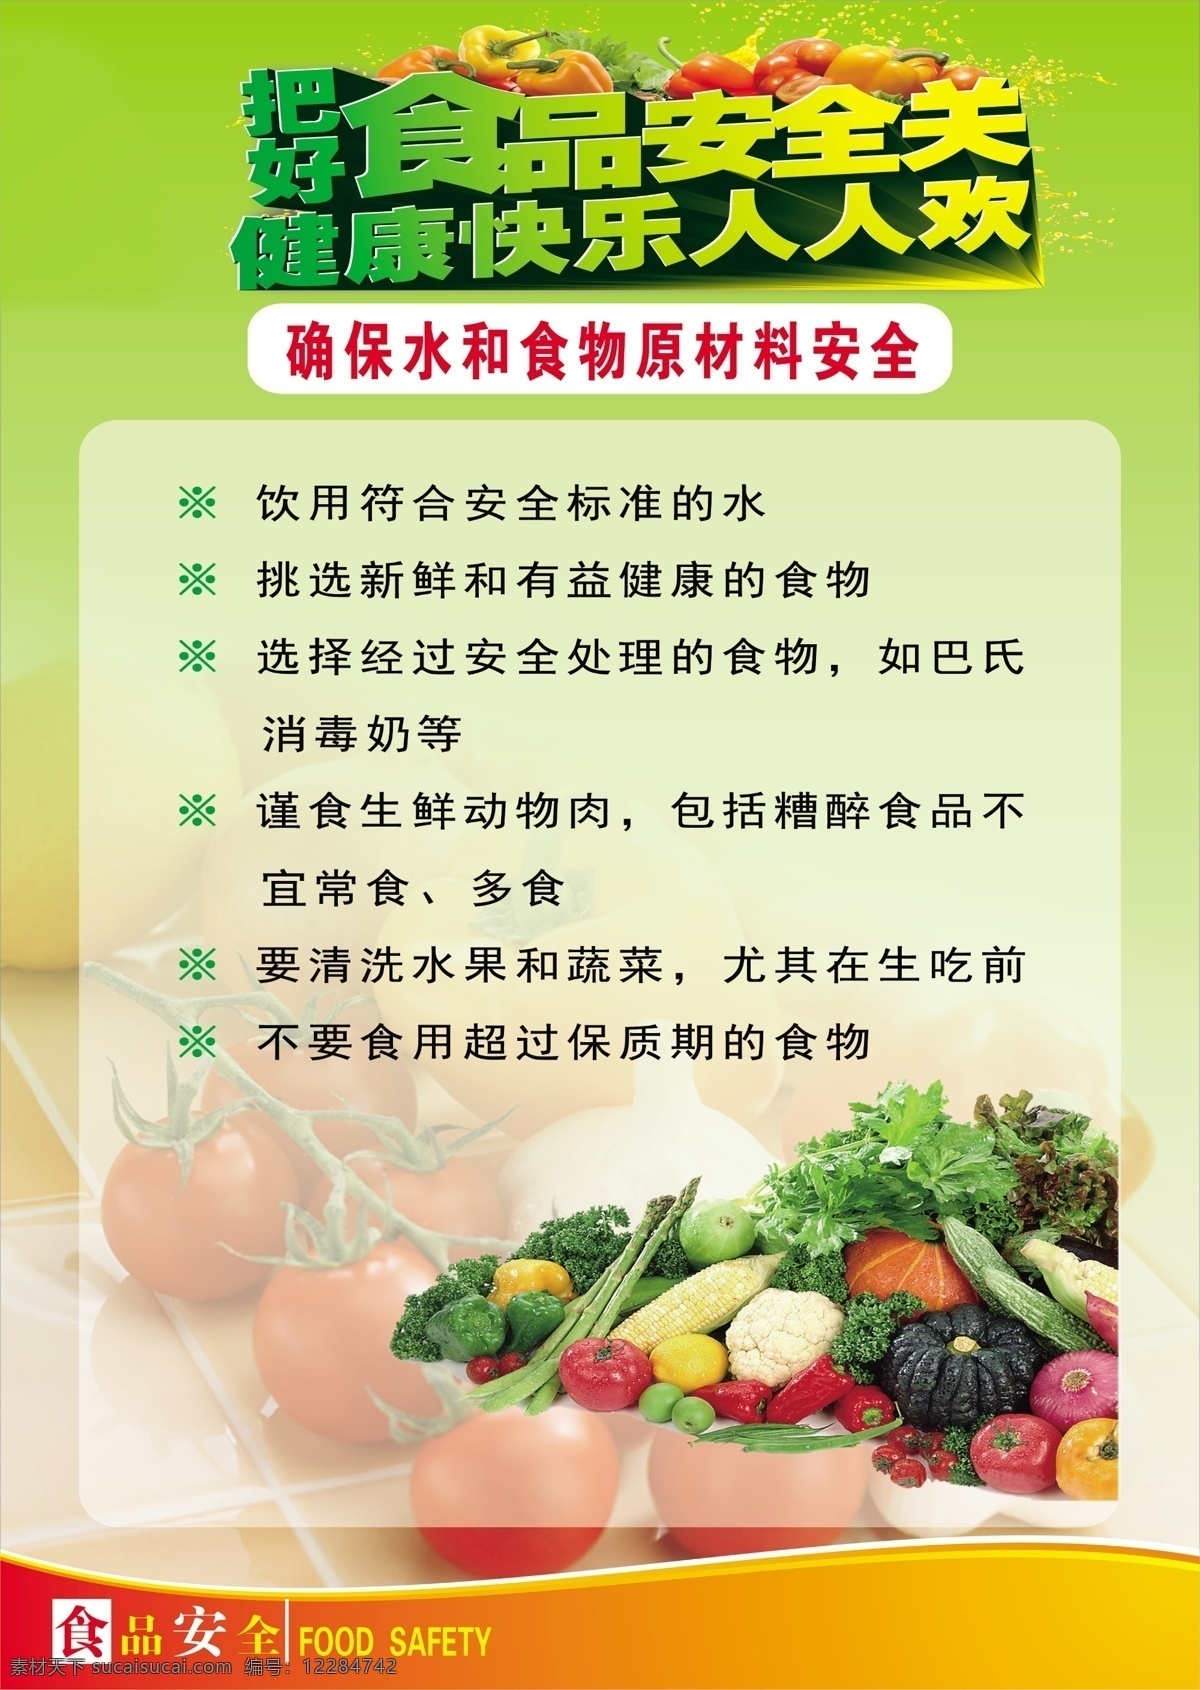 食品安全展板 蔬菜 西红柿 宣传 食品安全 展板 挂画 健康 食品 绿色 安全